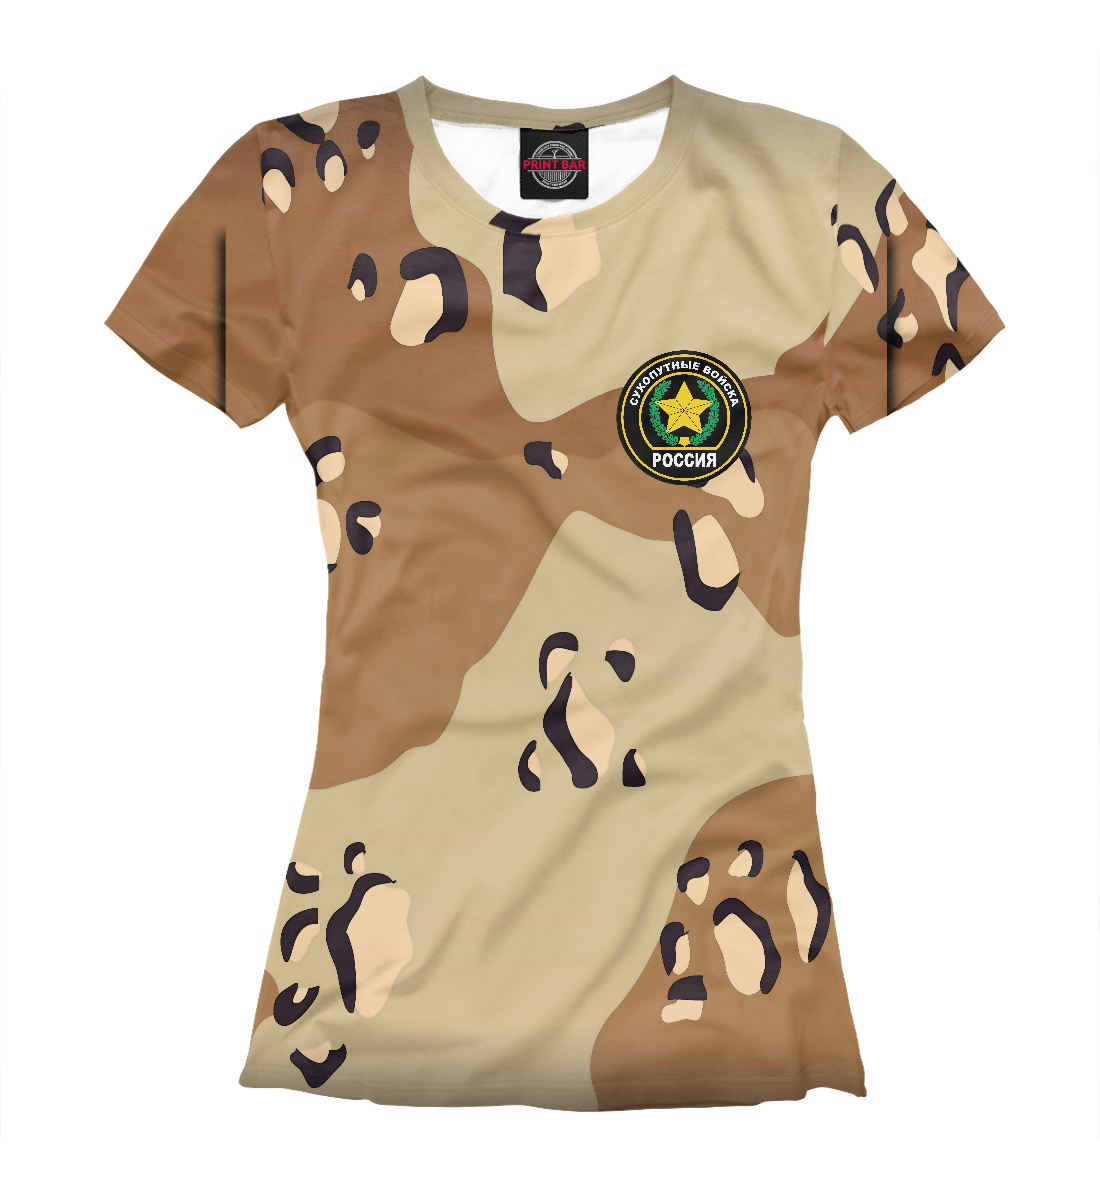 Футболка Сухопутные войска для женщин, артикул: ARZ-882523-fut-1mp